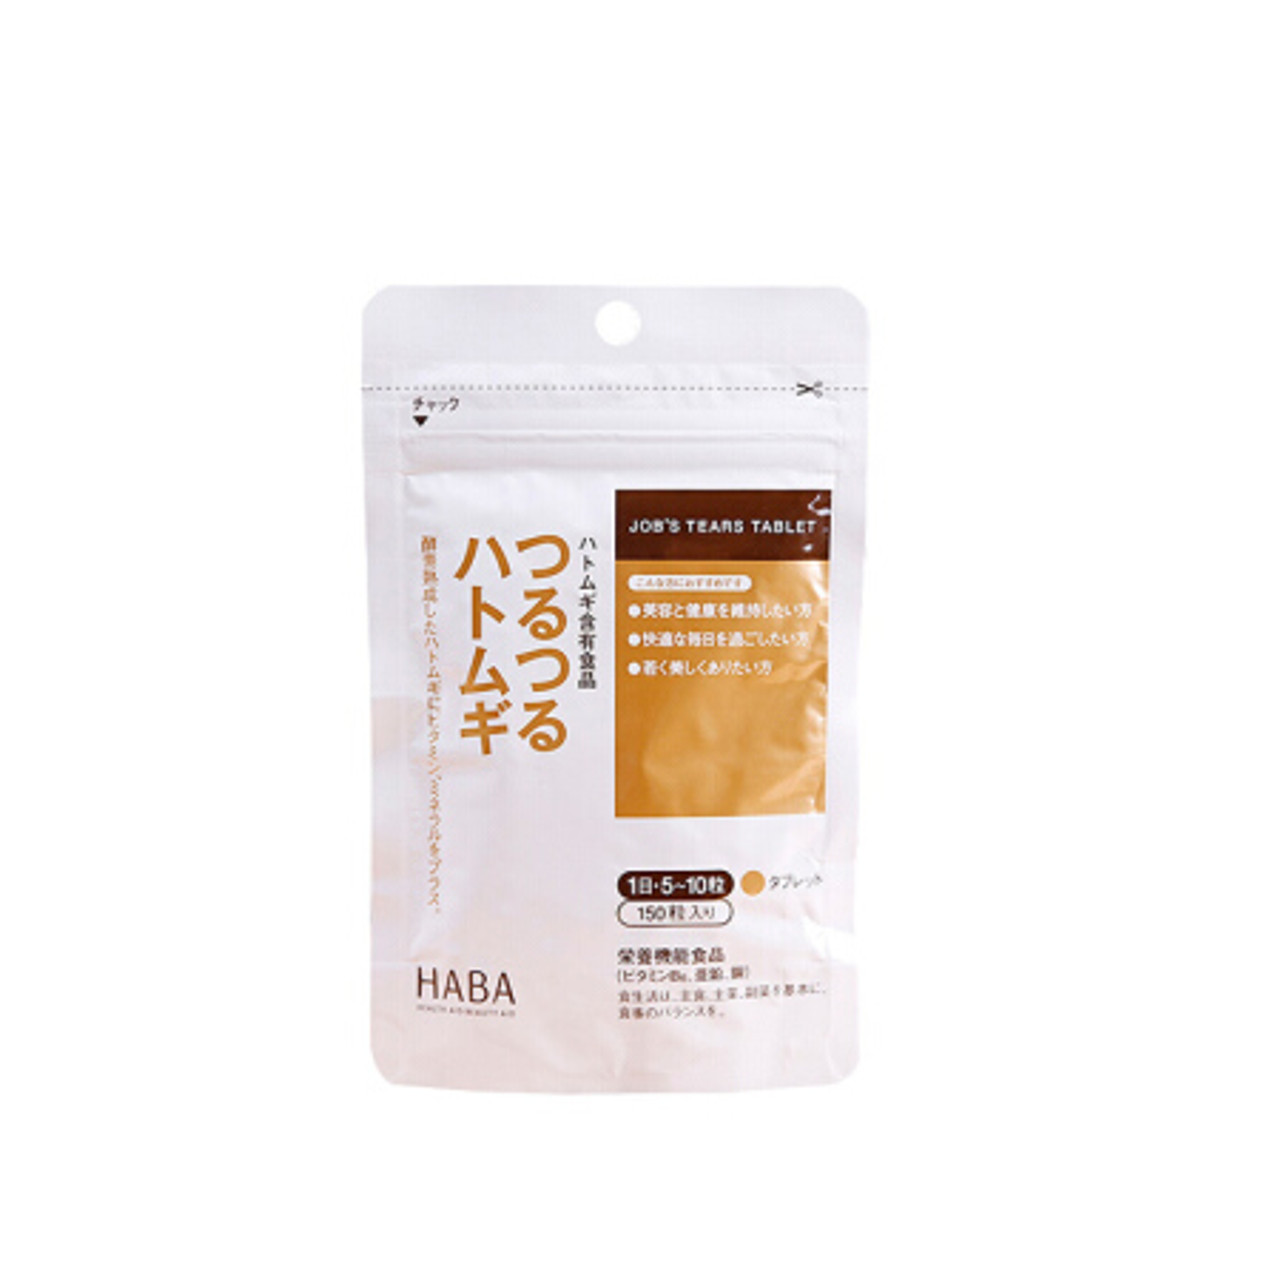 日本haba 无添加酵素熟成薏仁薏米精华美肌片150粒入 Beauty Corner 美妍角落